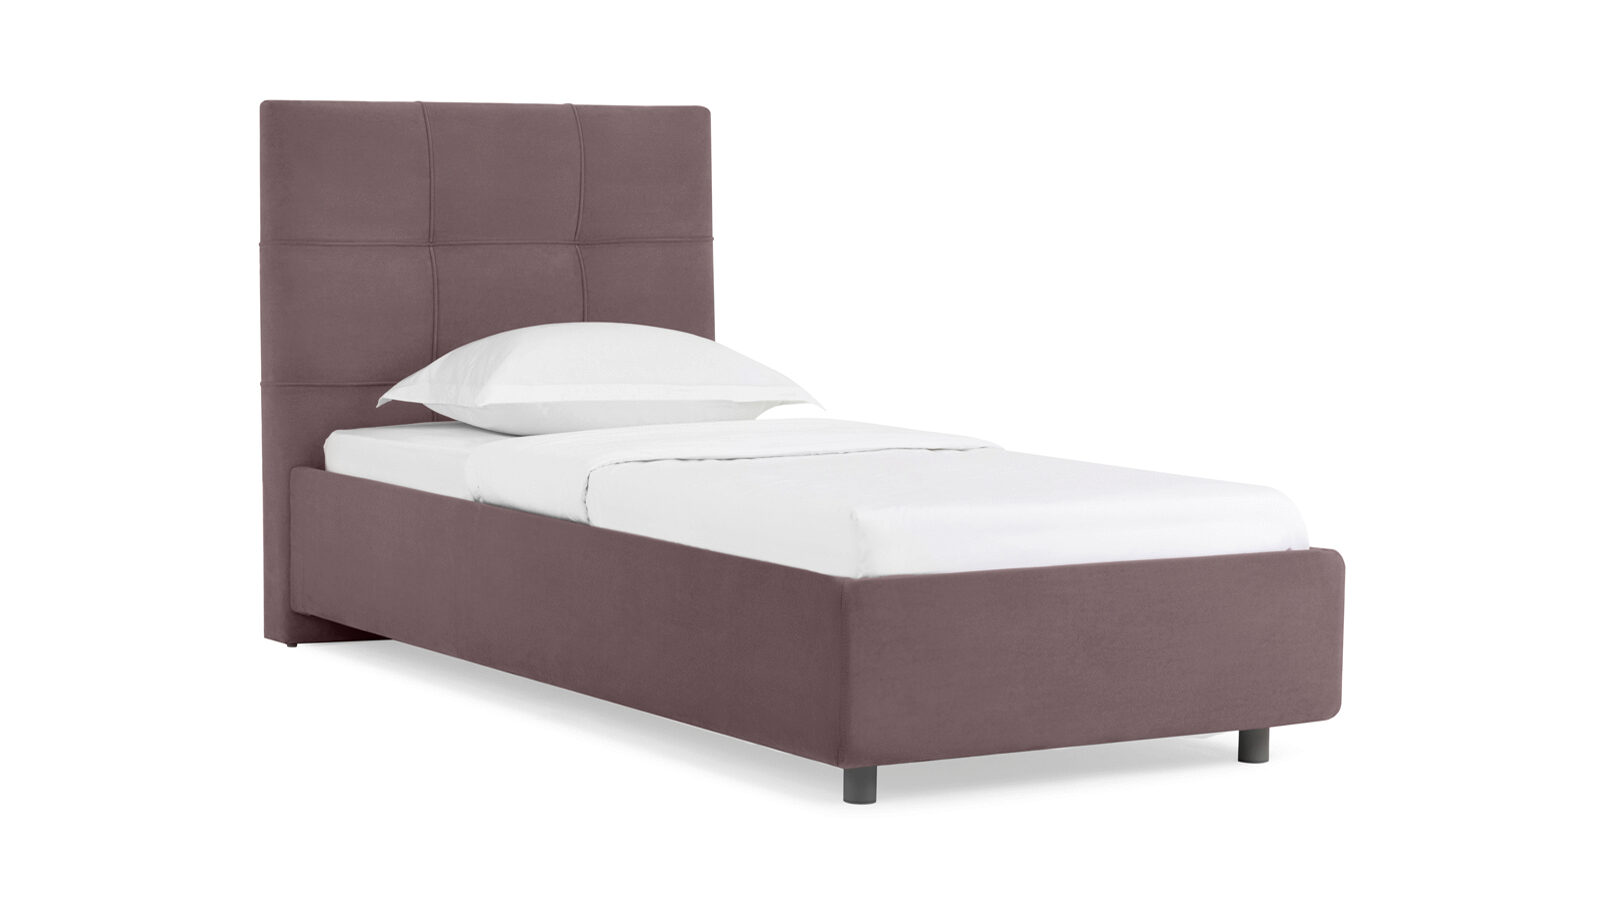 

Кровать с подъемным механизмом Elisa, размер 90х200см, Сиреневый, Elisa, размер 90х200см